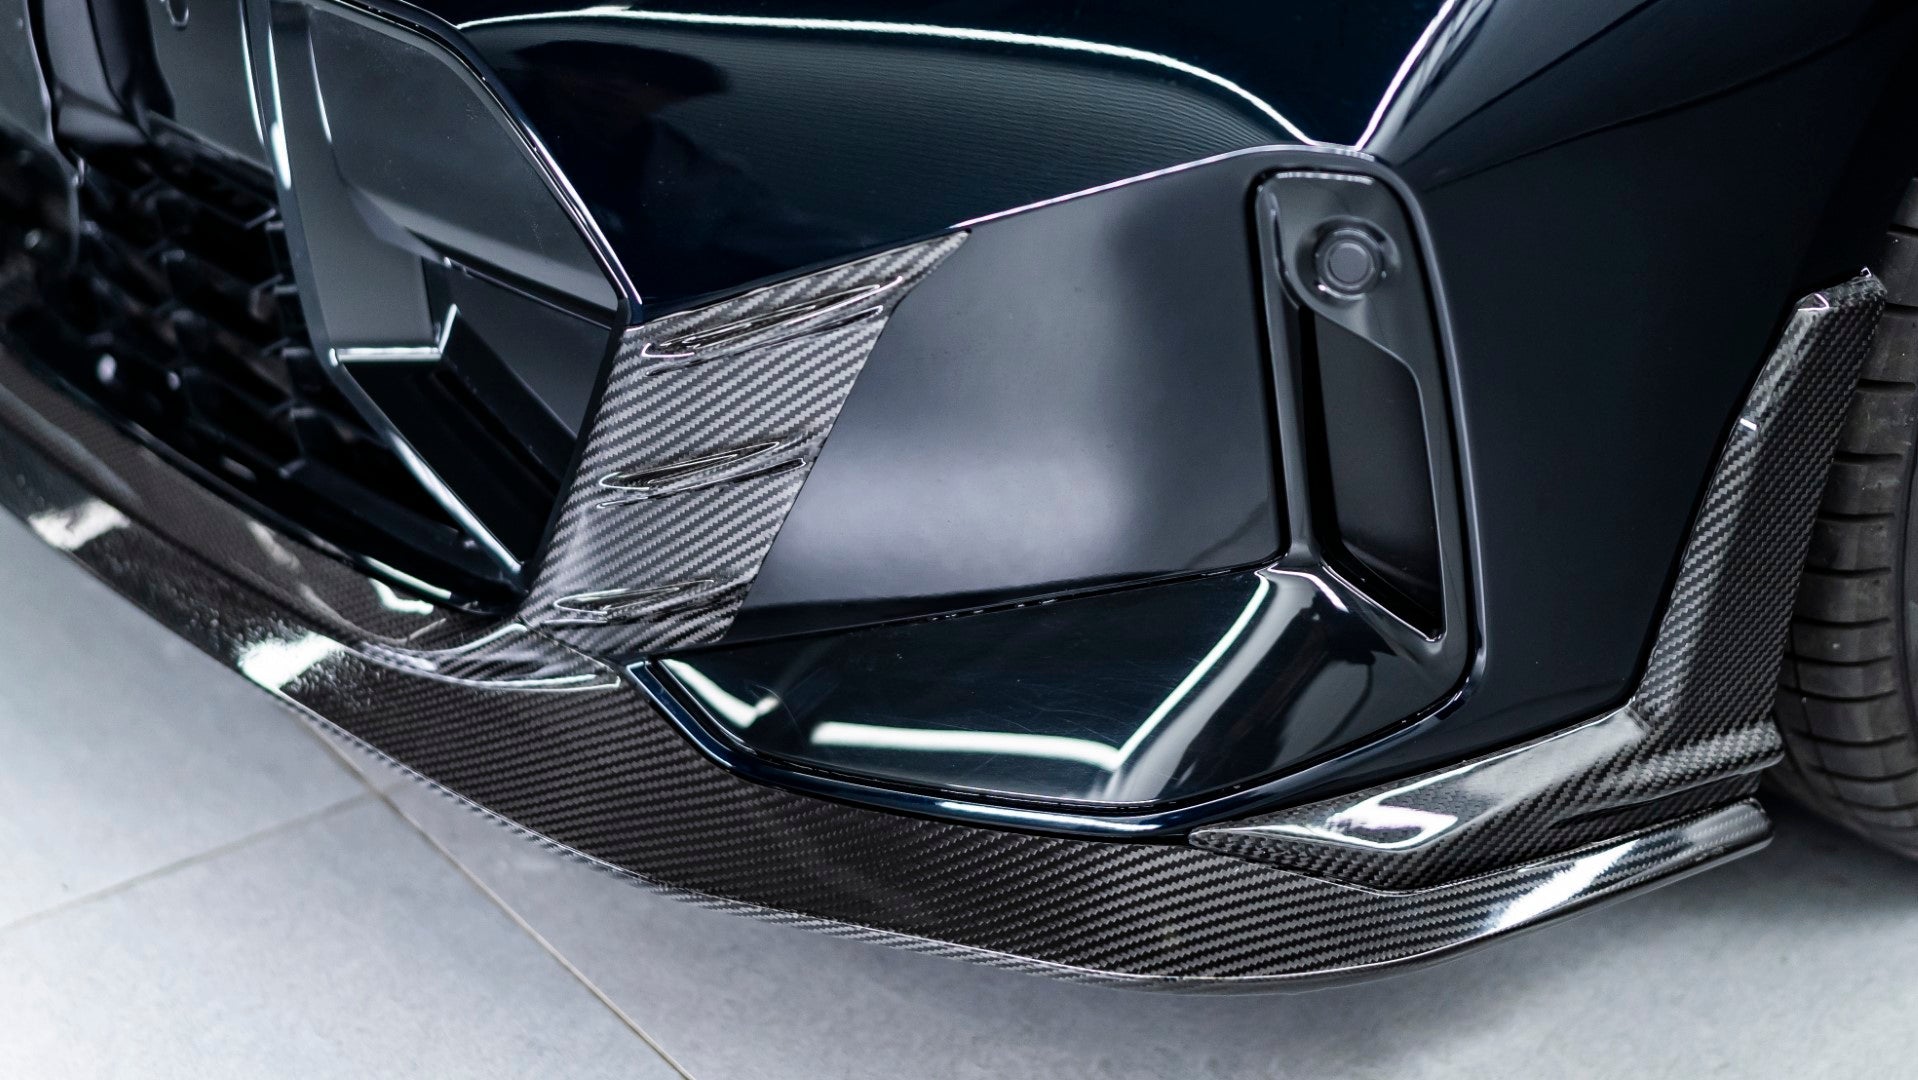 Karbel Carbon Pre-preg Carbon Fiber Aftermarket Parts - Front Lip Splitter for BMW 3 Series G20 330i M340i LCI 